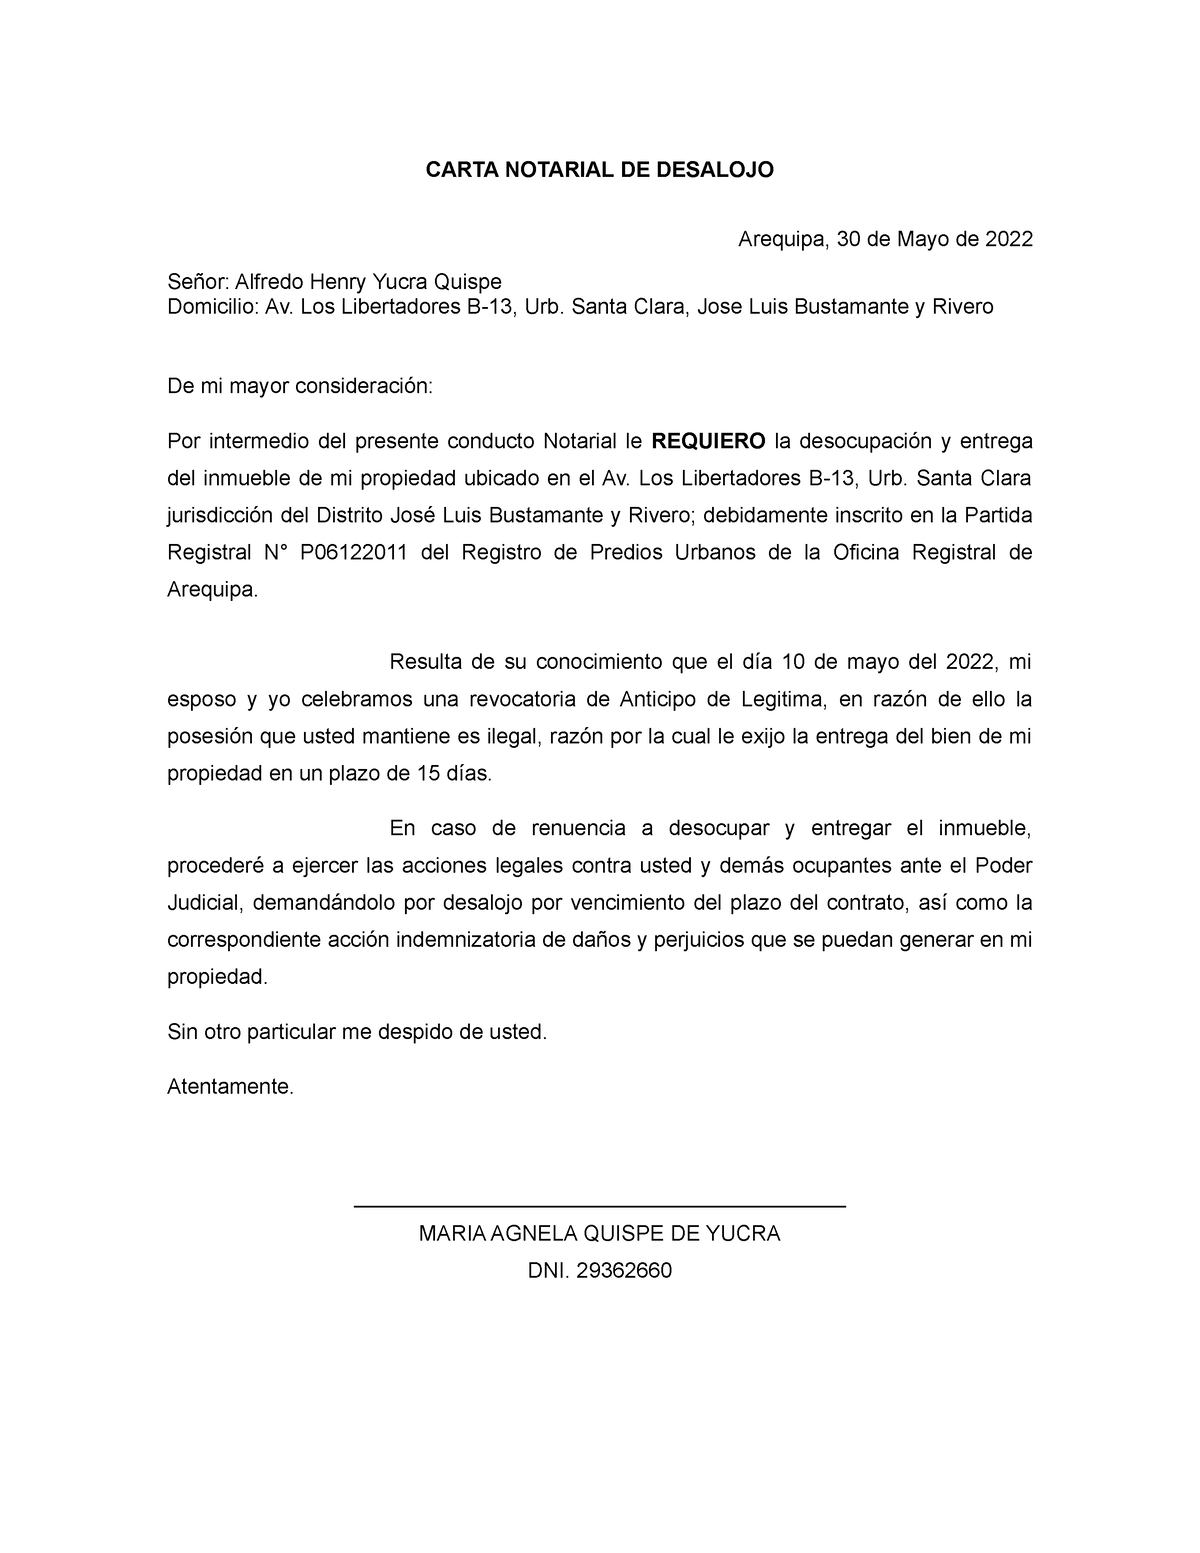 Modelo carta notarial desalojo 2016 (1) - CARTA NOTARIAL DE DESALOJO  Arequipa, 30 de Mayo de 2022 - Studocu